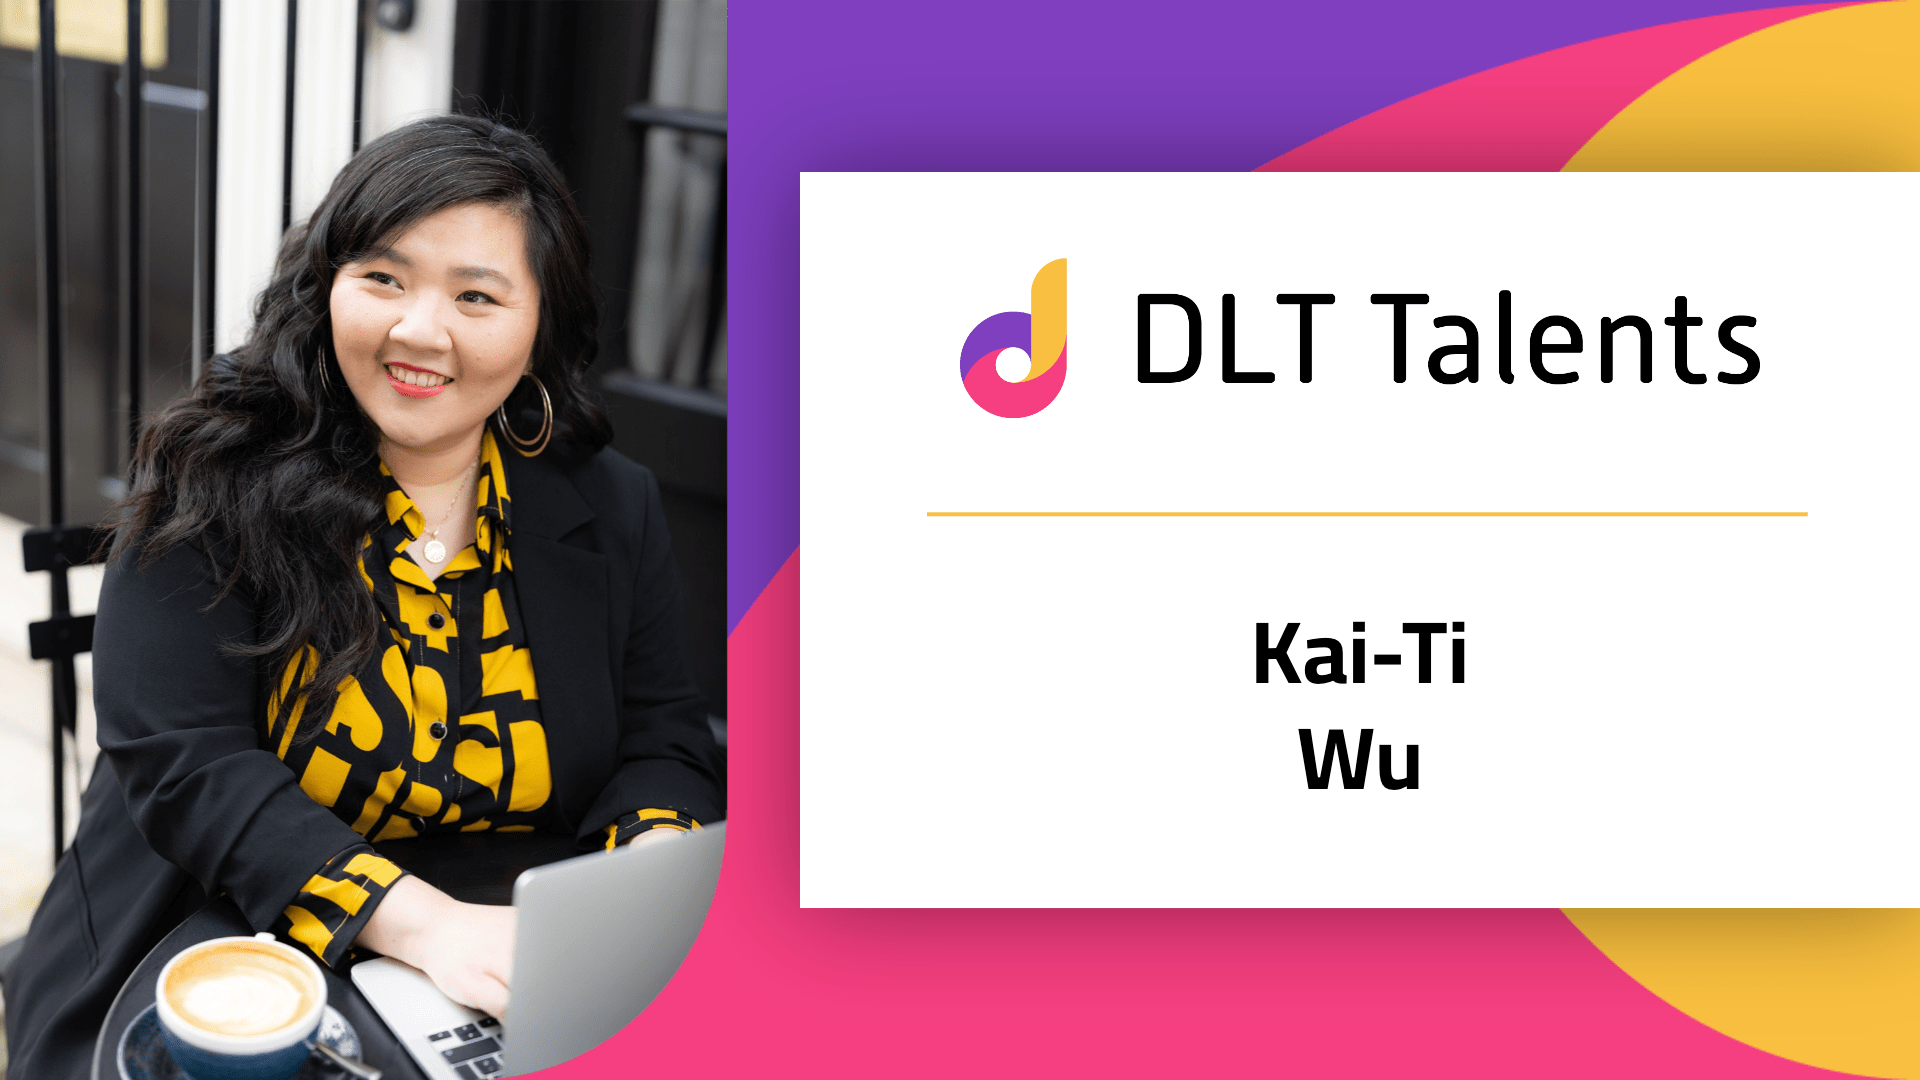 DLT Talents Mentor – Kai-Ti Wu